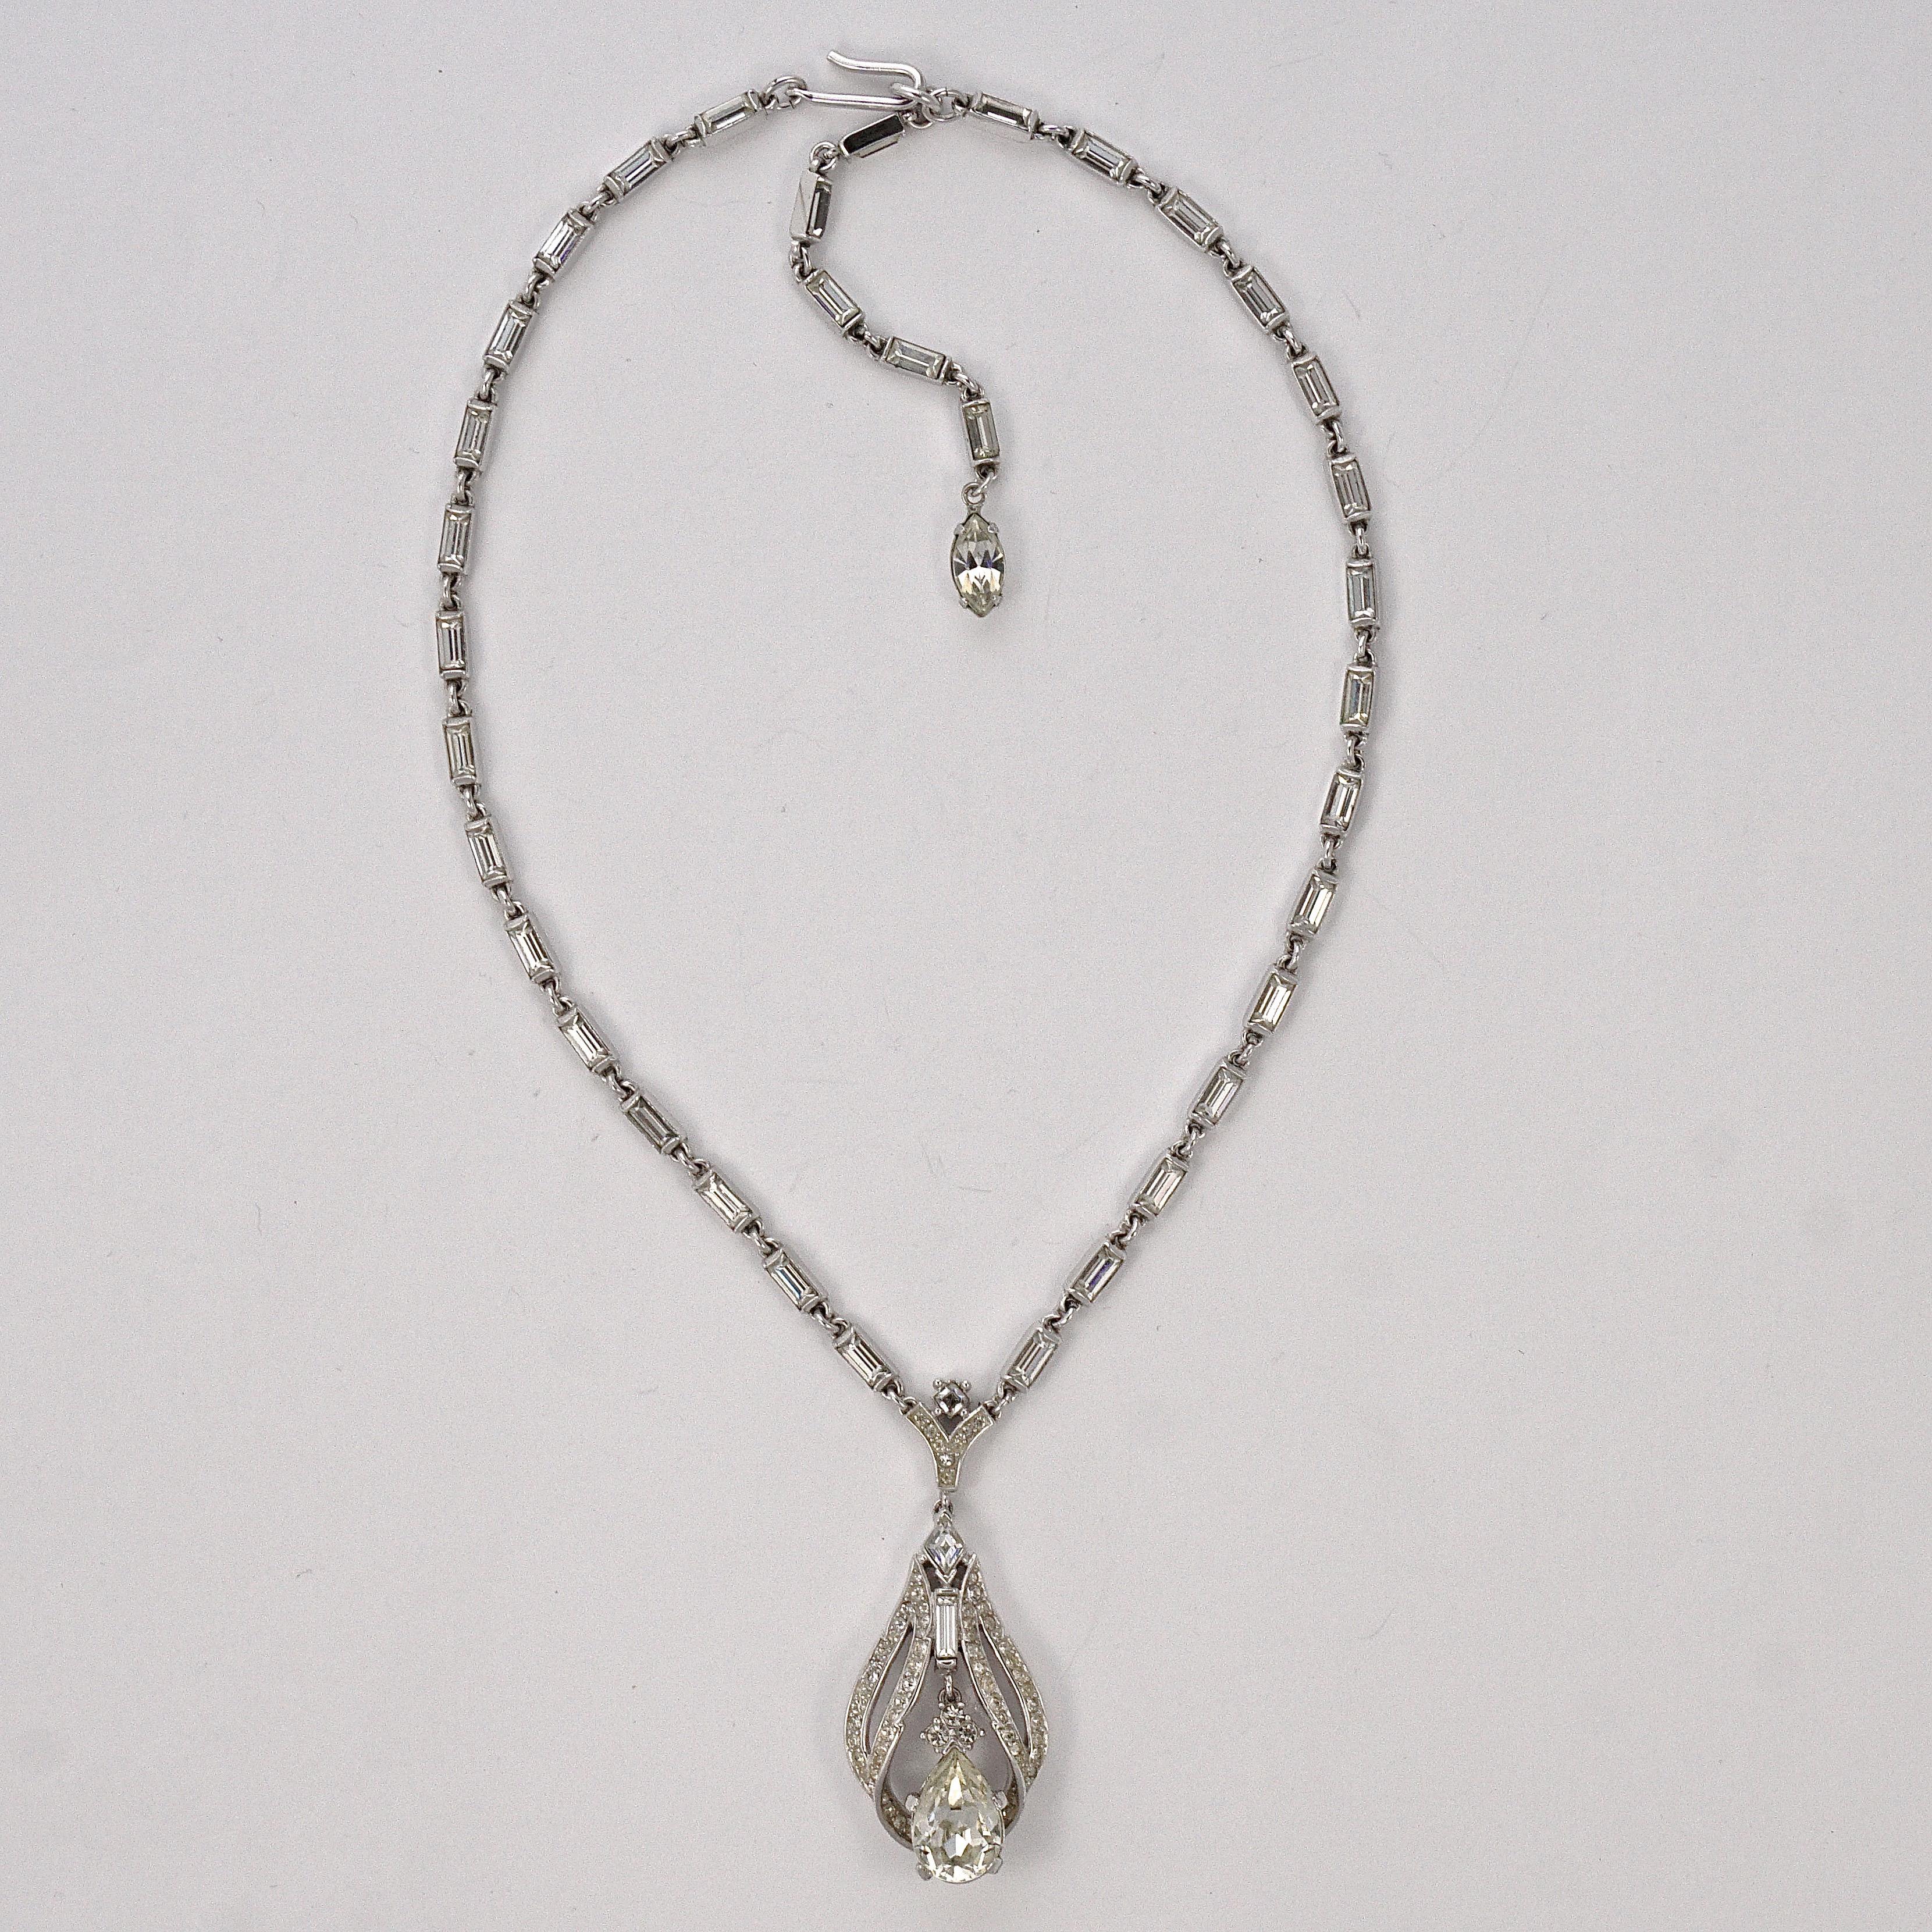 Fabuleux collier Trifari de couleur argent avec baguettes en strass, et avec un pendentif en strass avec une larme tremblante. Le collier mesure 39.4cm / 15.5 inches, et peut être porté à une longueur plus courte en ajustant le crochet. Ce